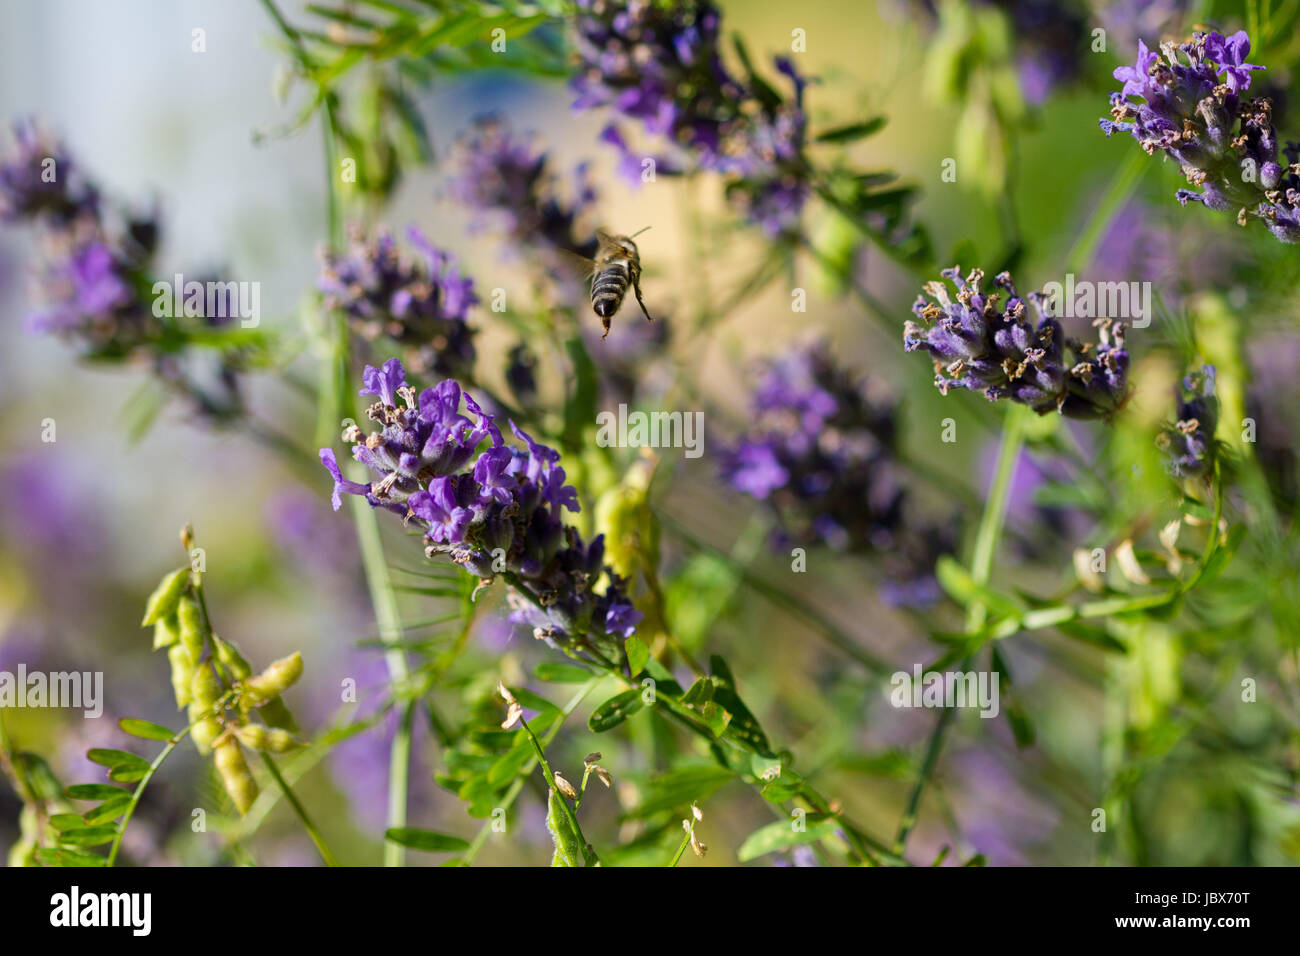 Das Bild zeigt eine Biene, die zwischen Lavendel fliegt. Stock Photo